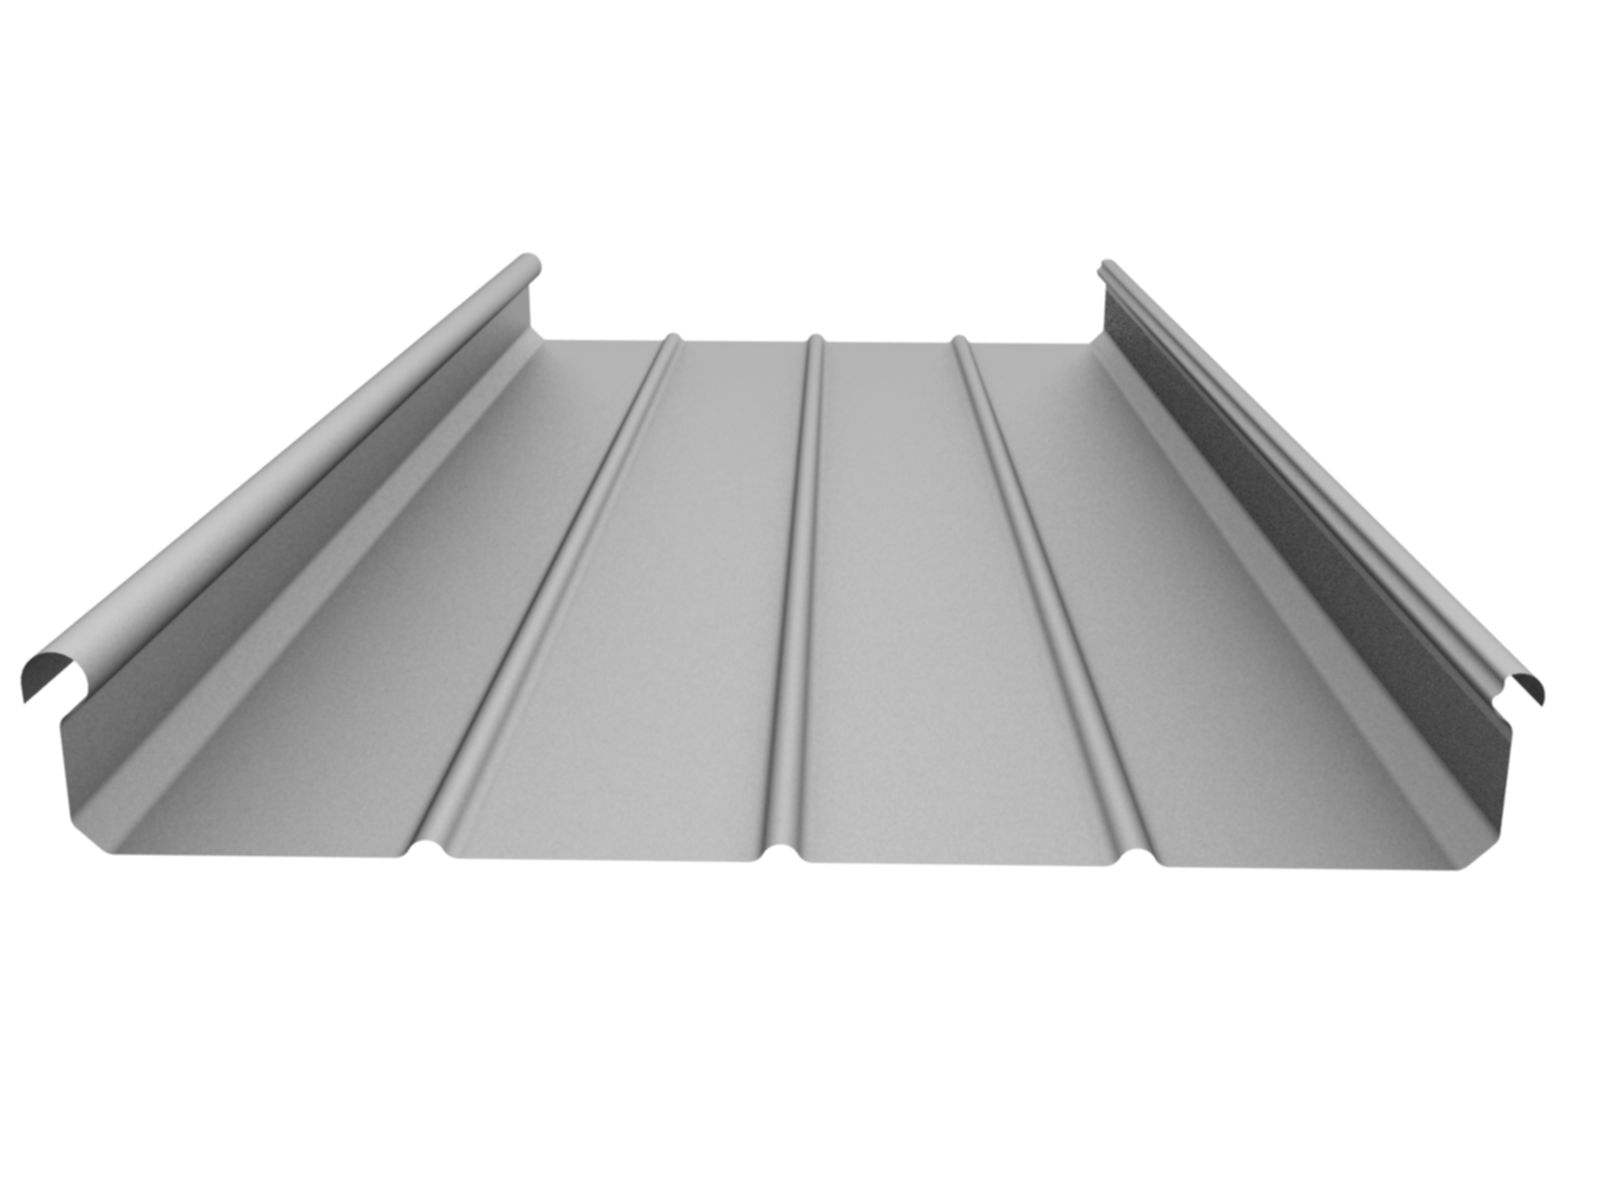 铝镁锰金属屋面系统设计应注意以下问题